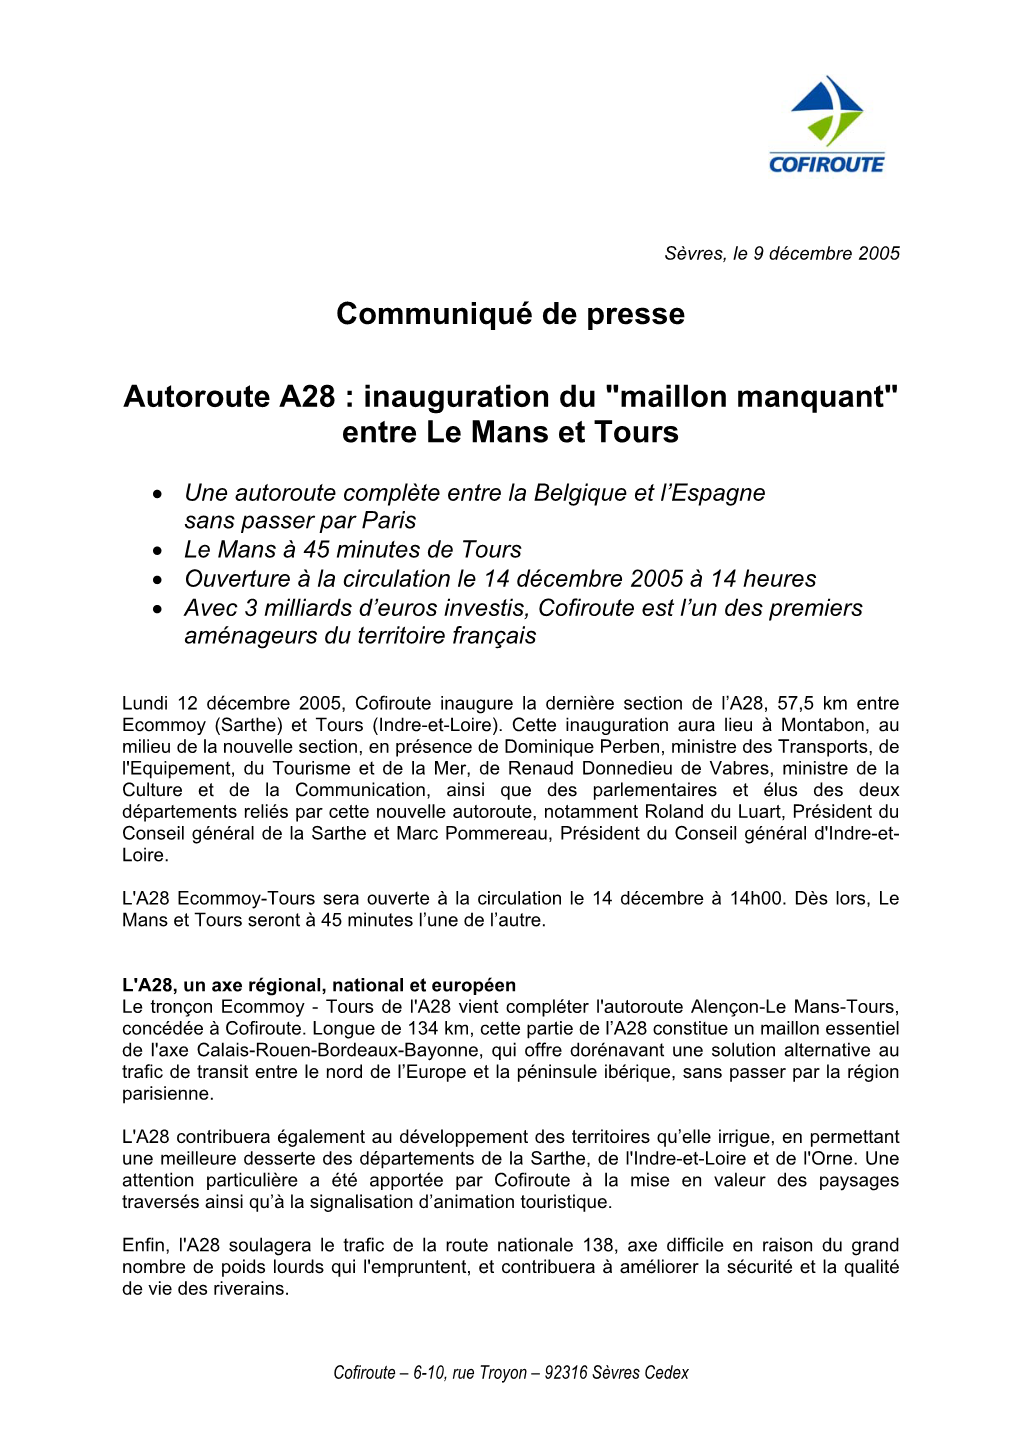 Communiqué De Presse Autoroute A28 : Inauguration Du